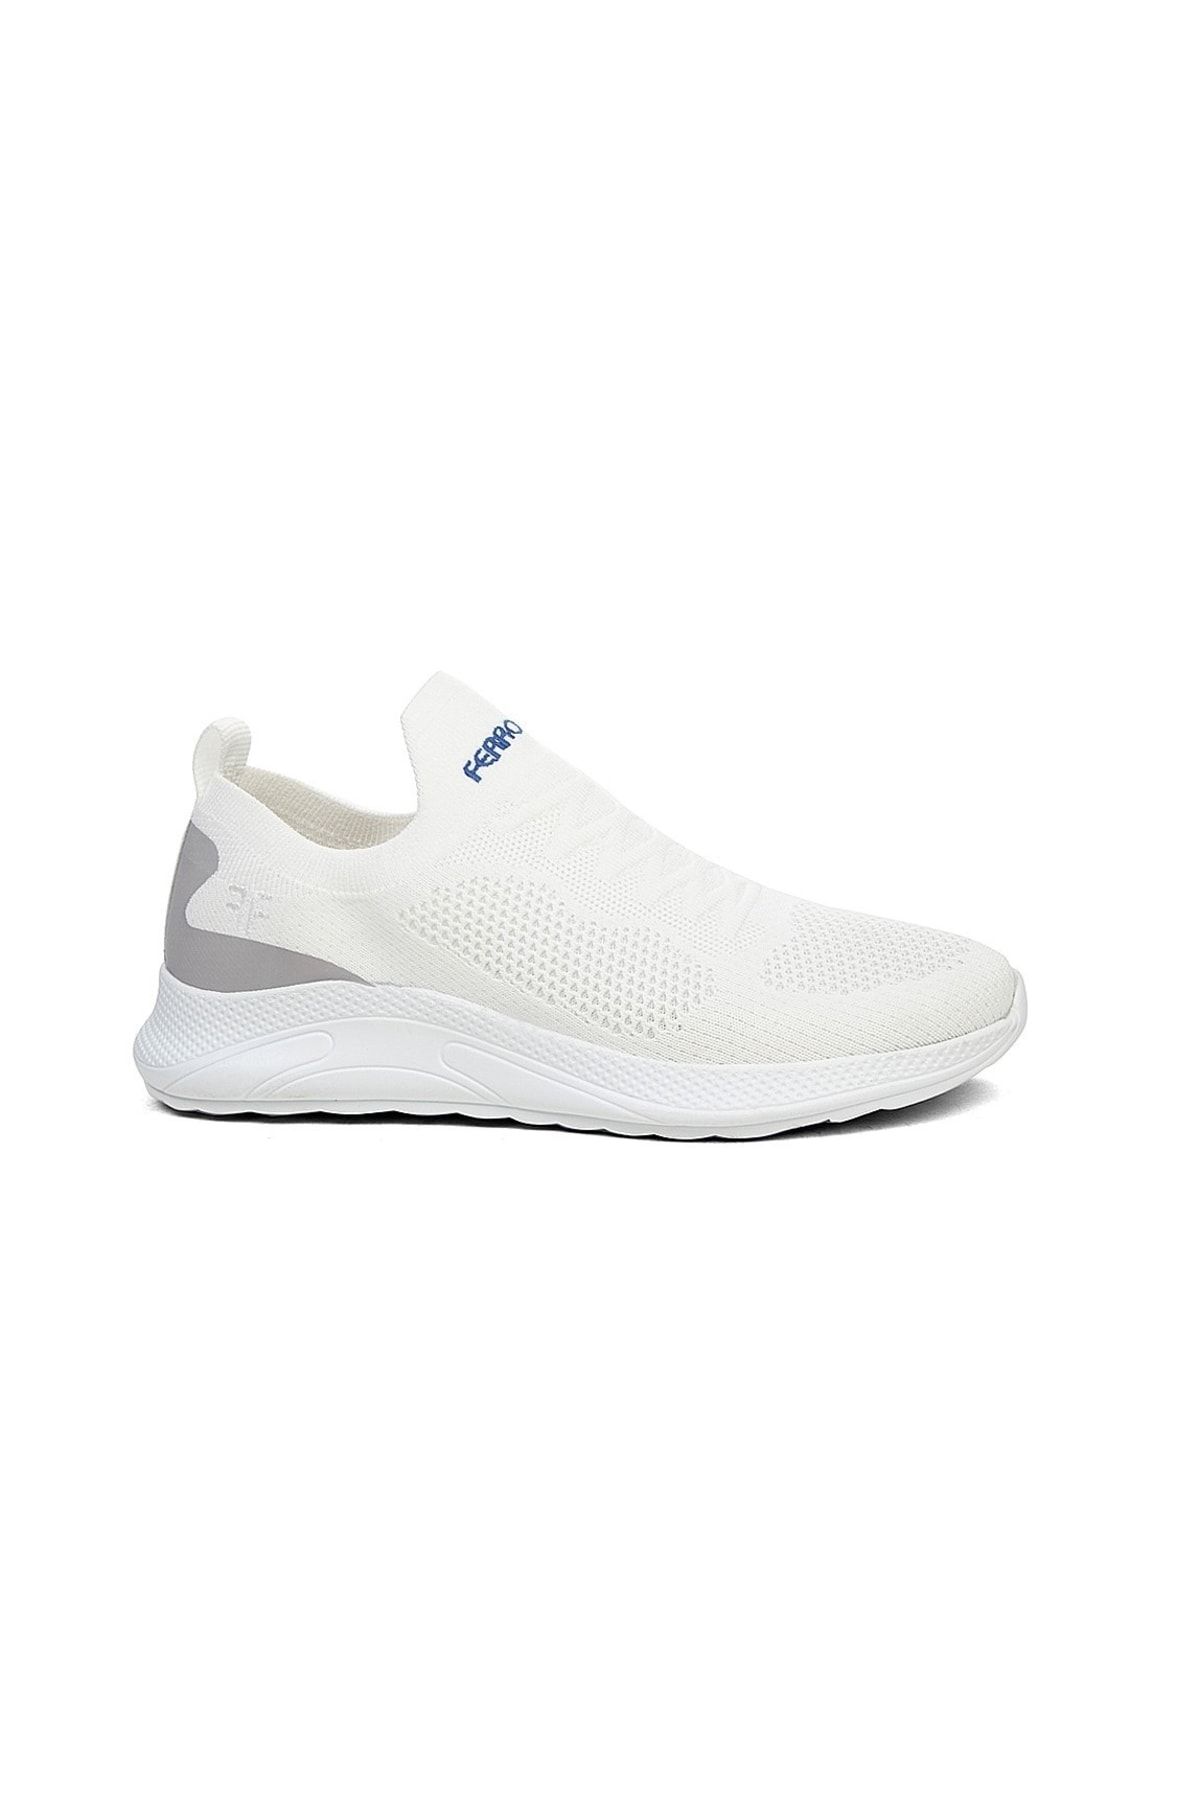 FERROSSA Triko Sneakers Spor Bağcıksız Ayakkabı-rahat Ortopedik Kalın Taban Beyaz Renk